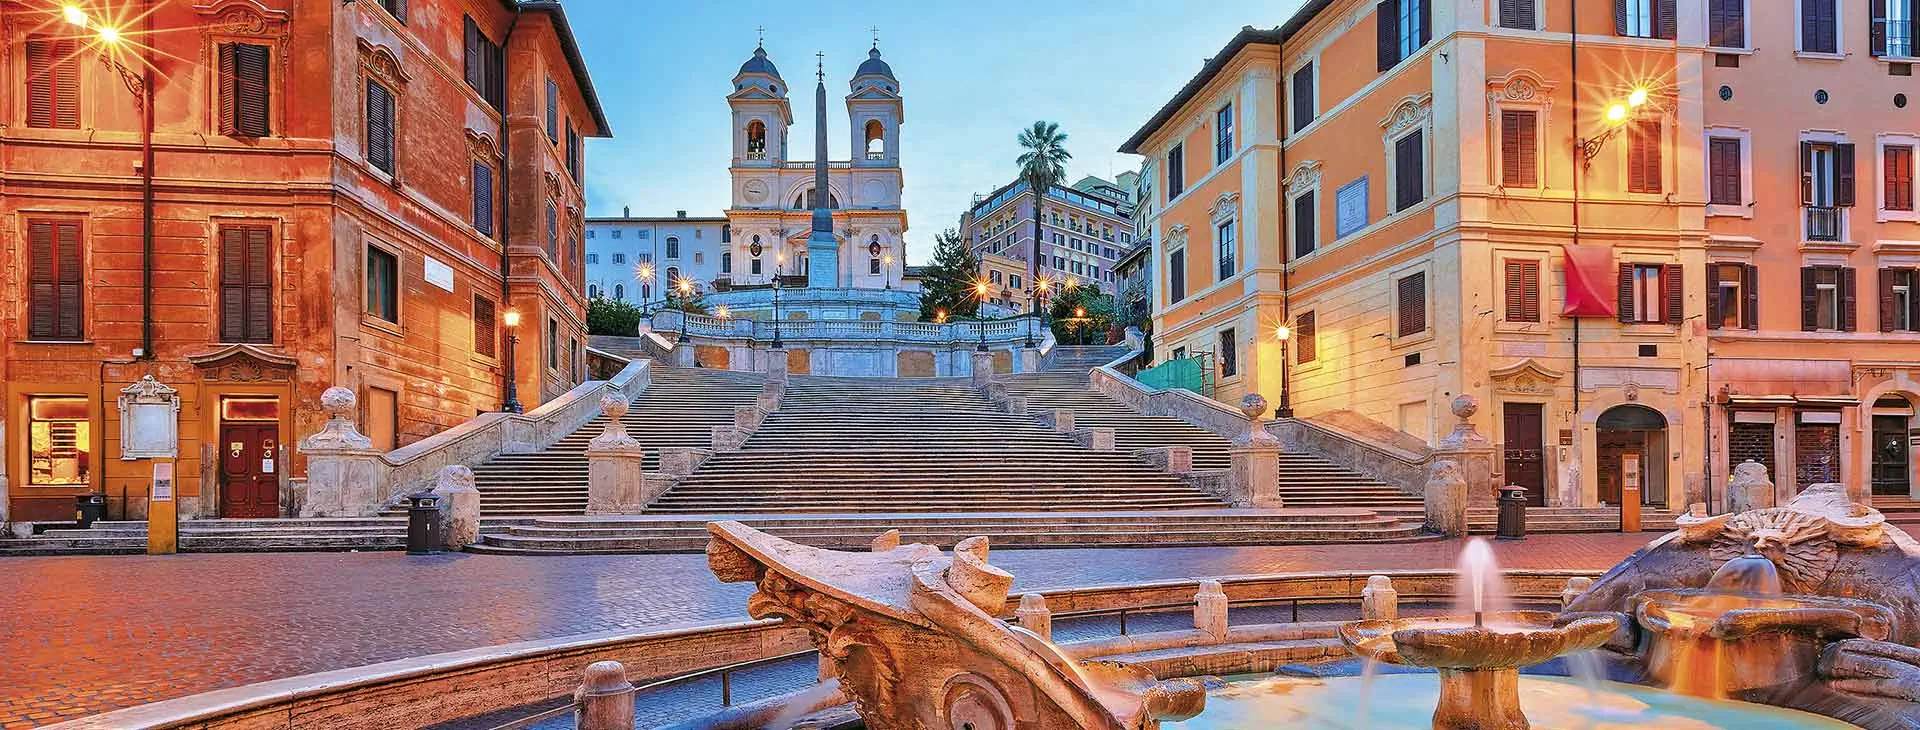 Włochy Rzym Rzym Roma & Vaticano - Doppio Italiano